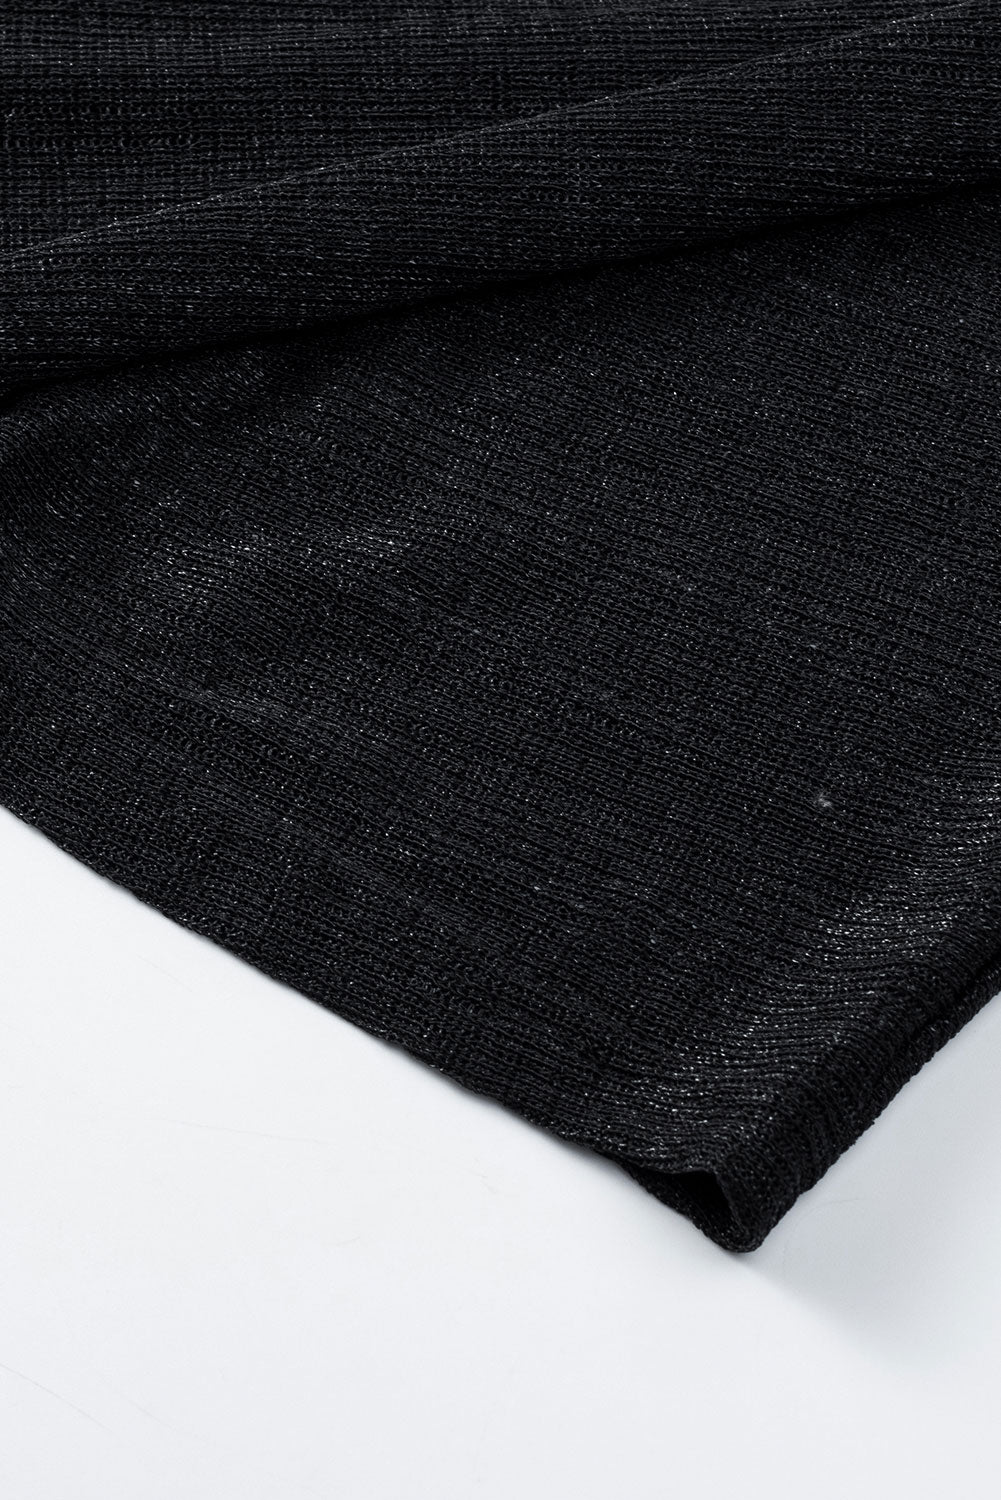 Cardigan a maniche lunghe in maglia leggera nera trasparente